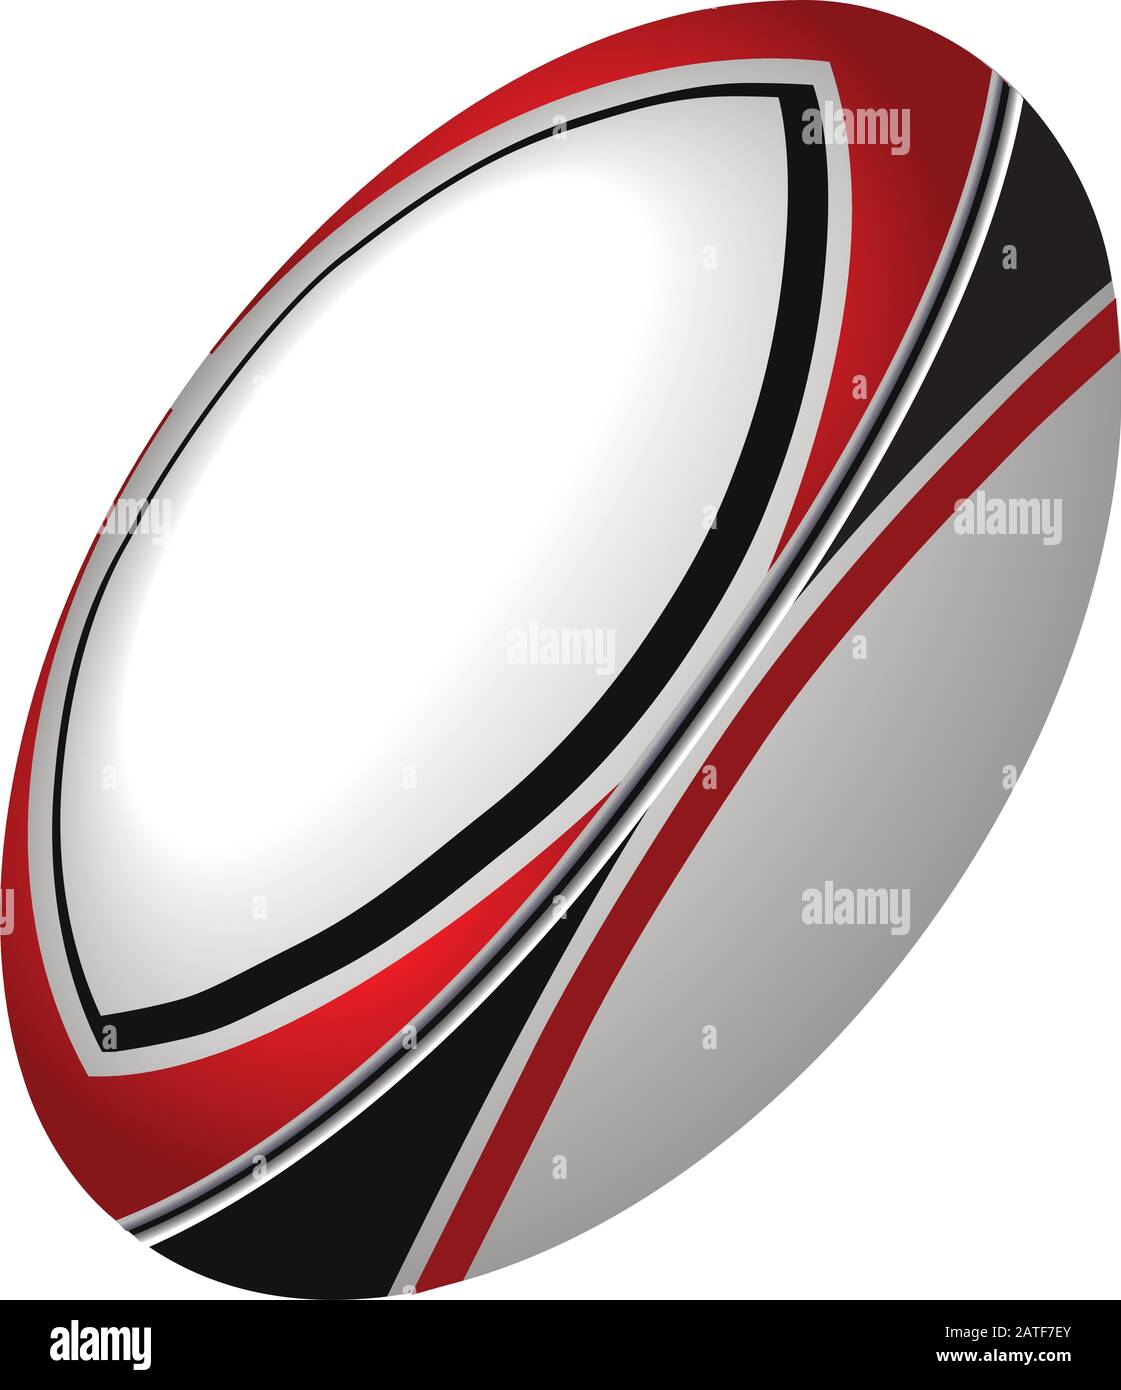 Vektor Rugby Ball in imaginären Farbschema, isoliert auf weißem Hintergrund. Stock Vektor